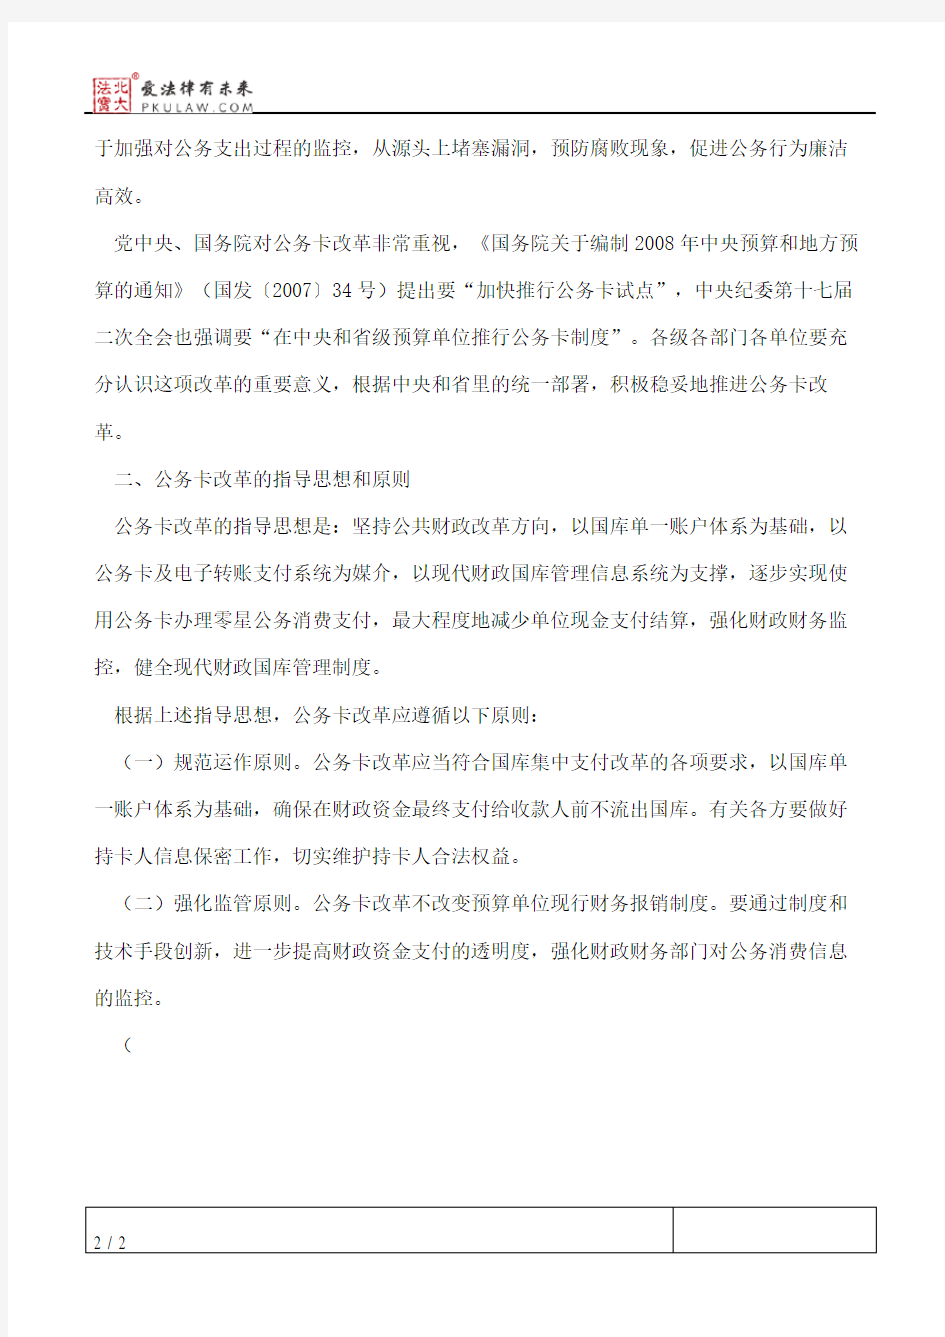 济南市预算单位公务卡改革实施意见